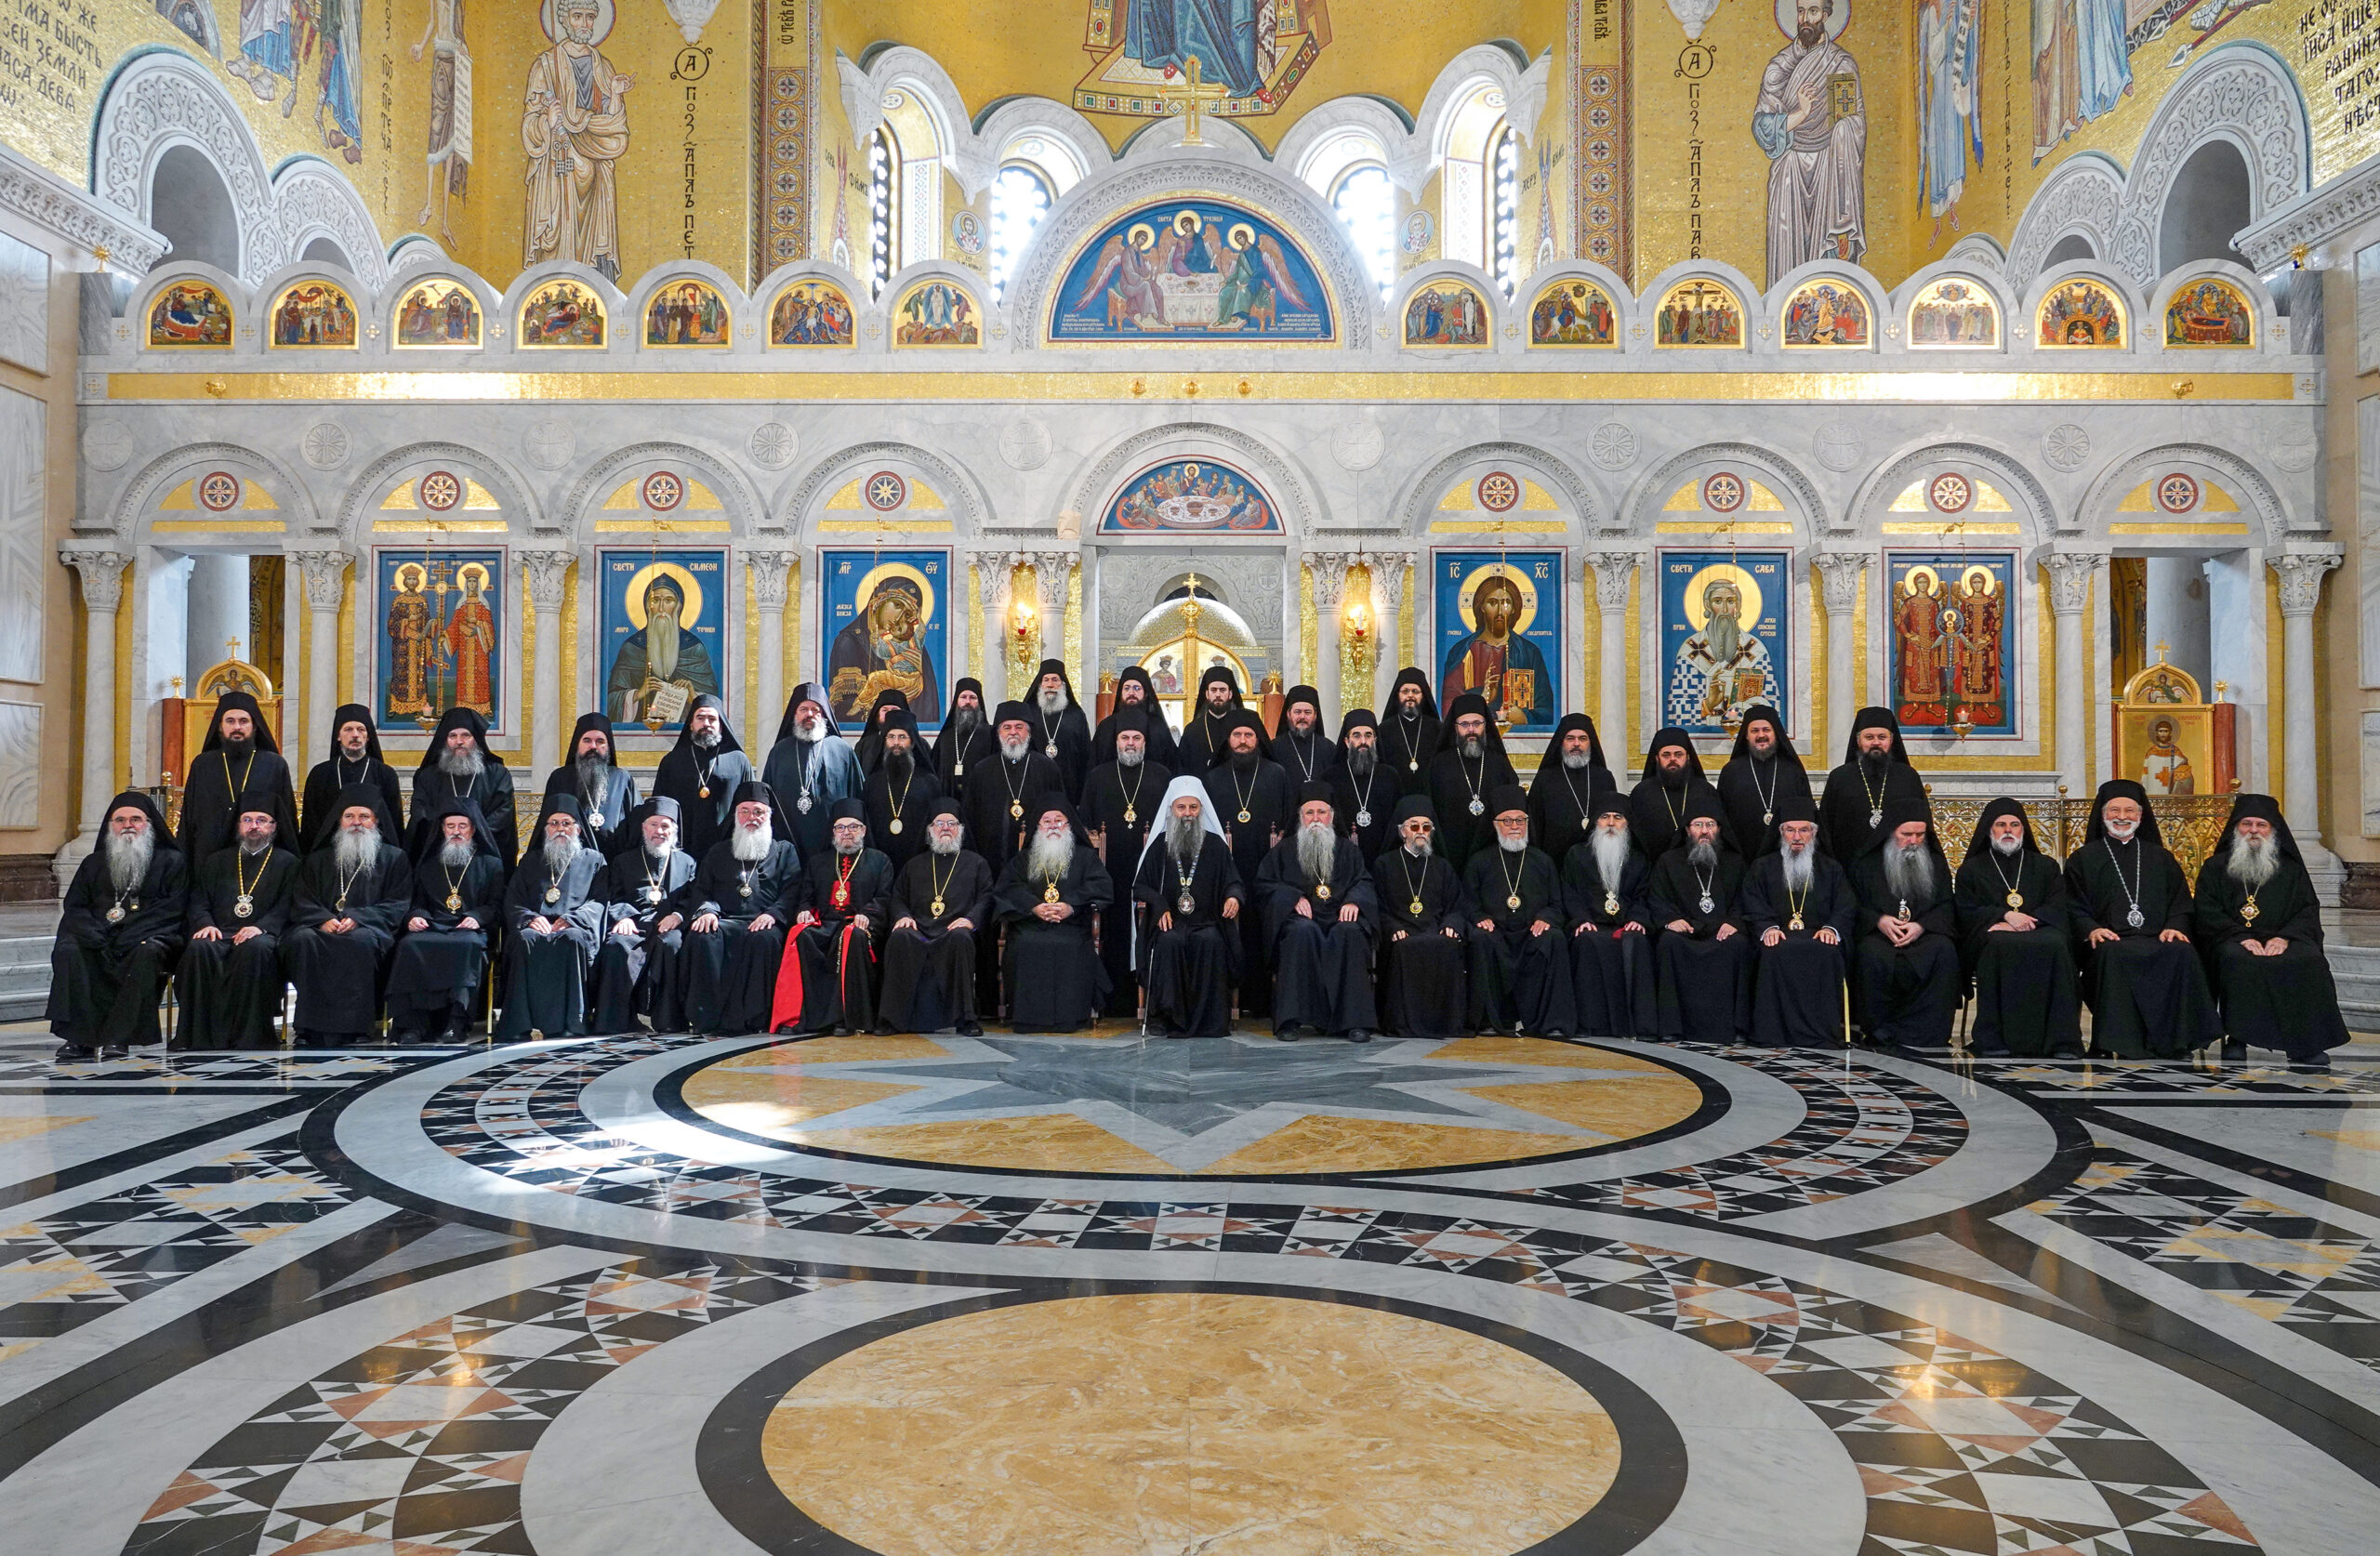 Communiqué de presse de la session ordinaire de l’Assemblée des évêques de l’Église orthodoxe serbe tenue en l’église Saint-Sava à Belgrade du 14 au 18 mai